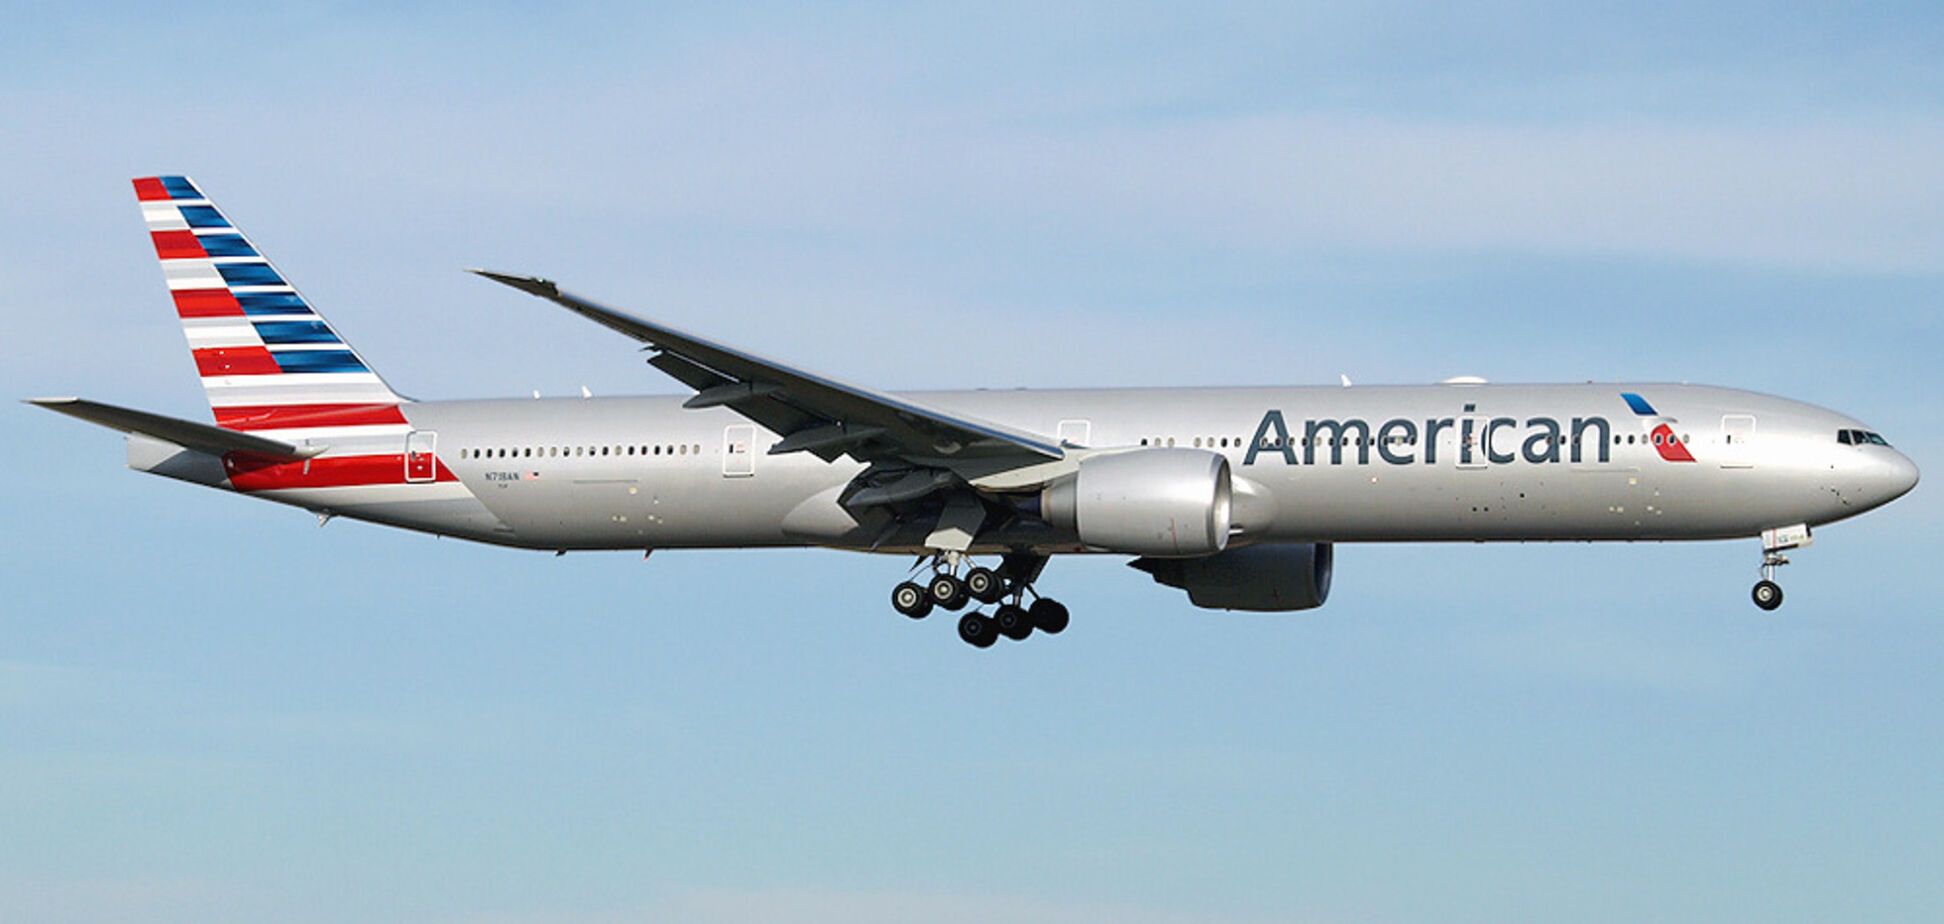 'Члены экипажа потеряли сознание!' С самолетом American Airlines произошло странное ЧП